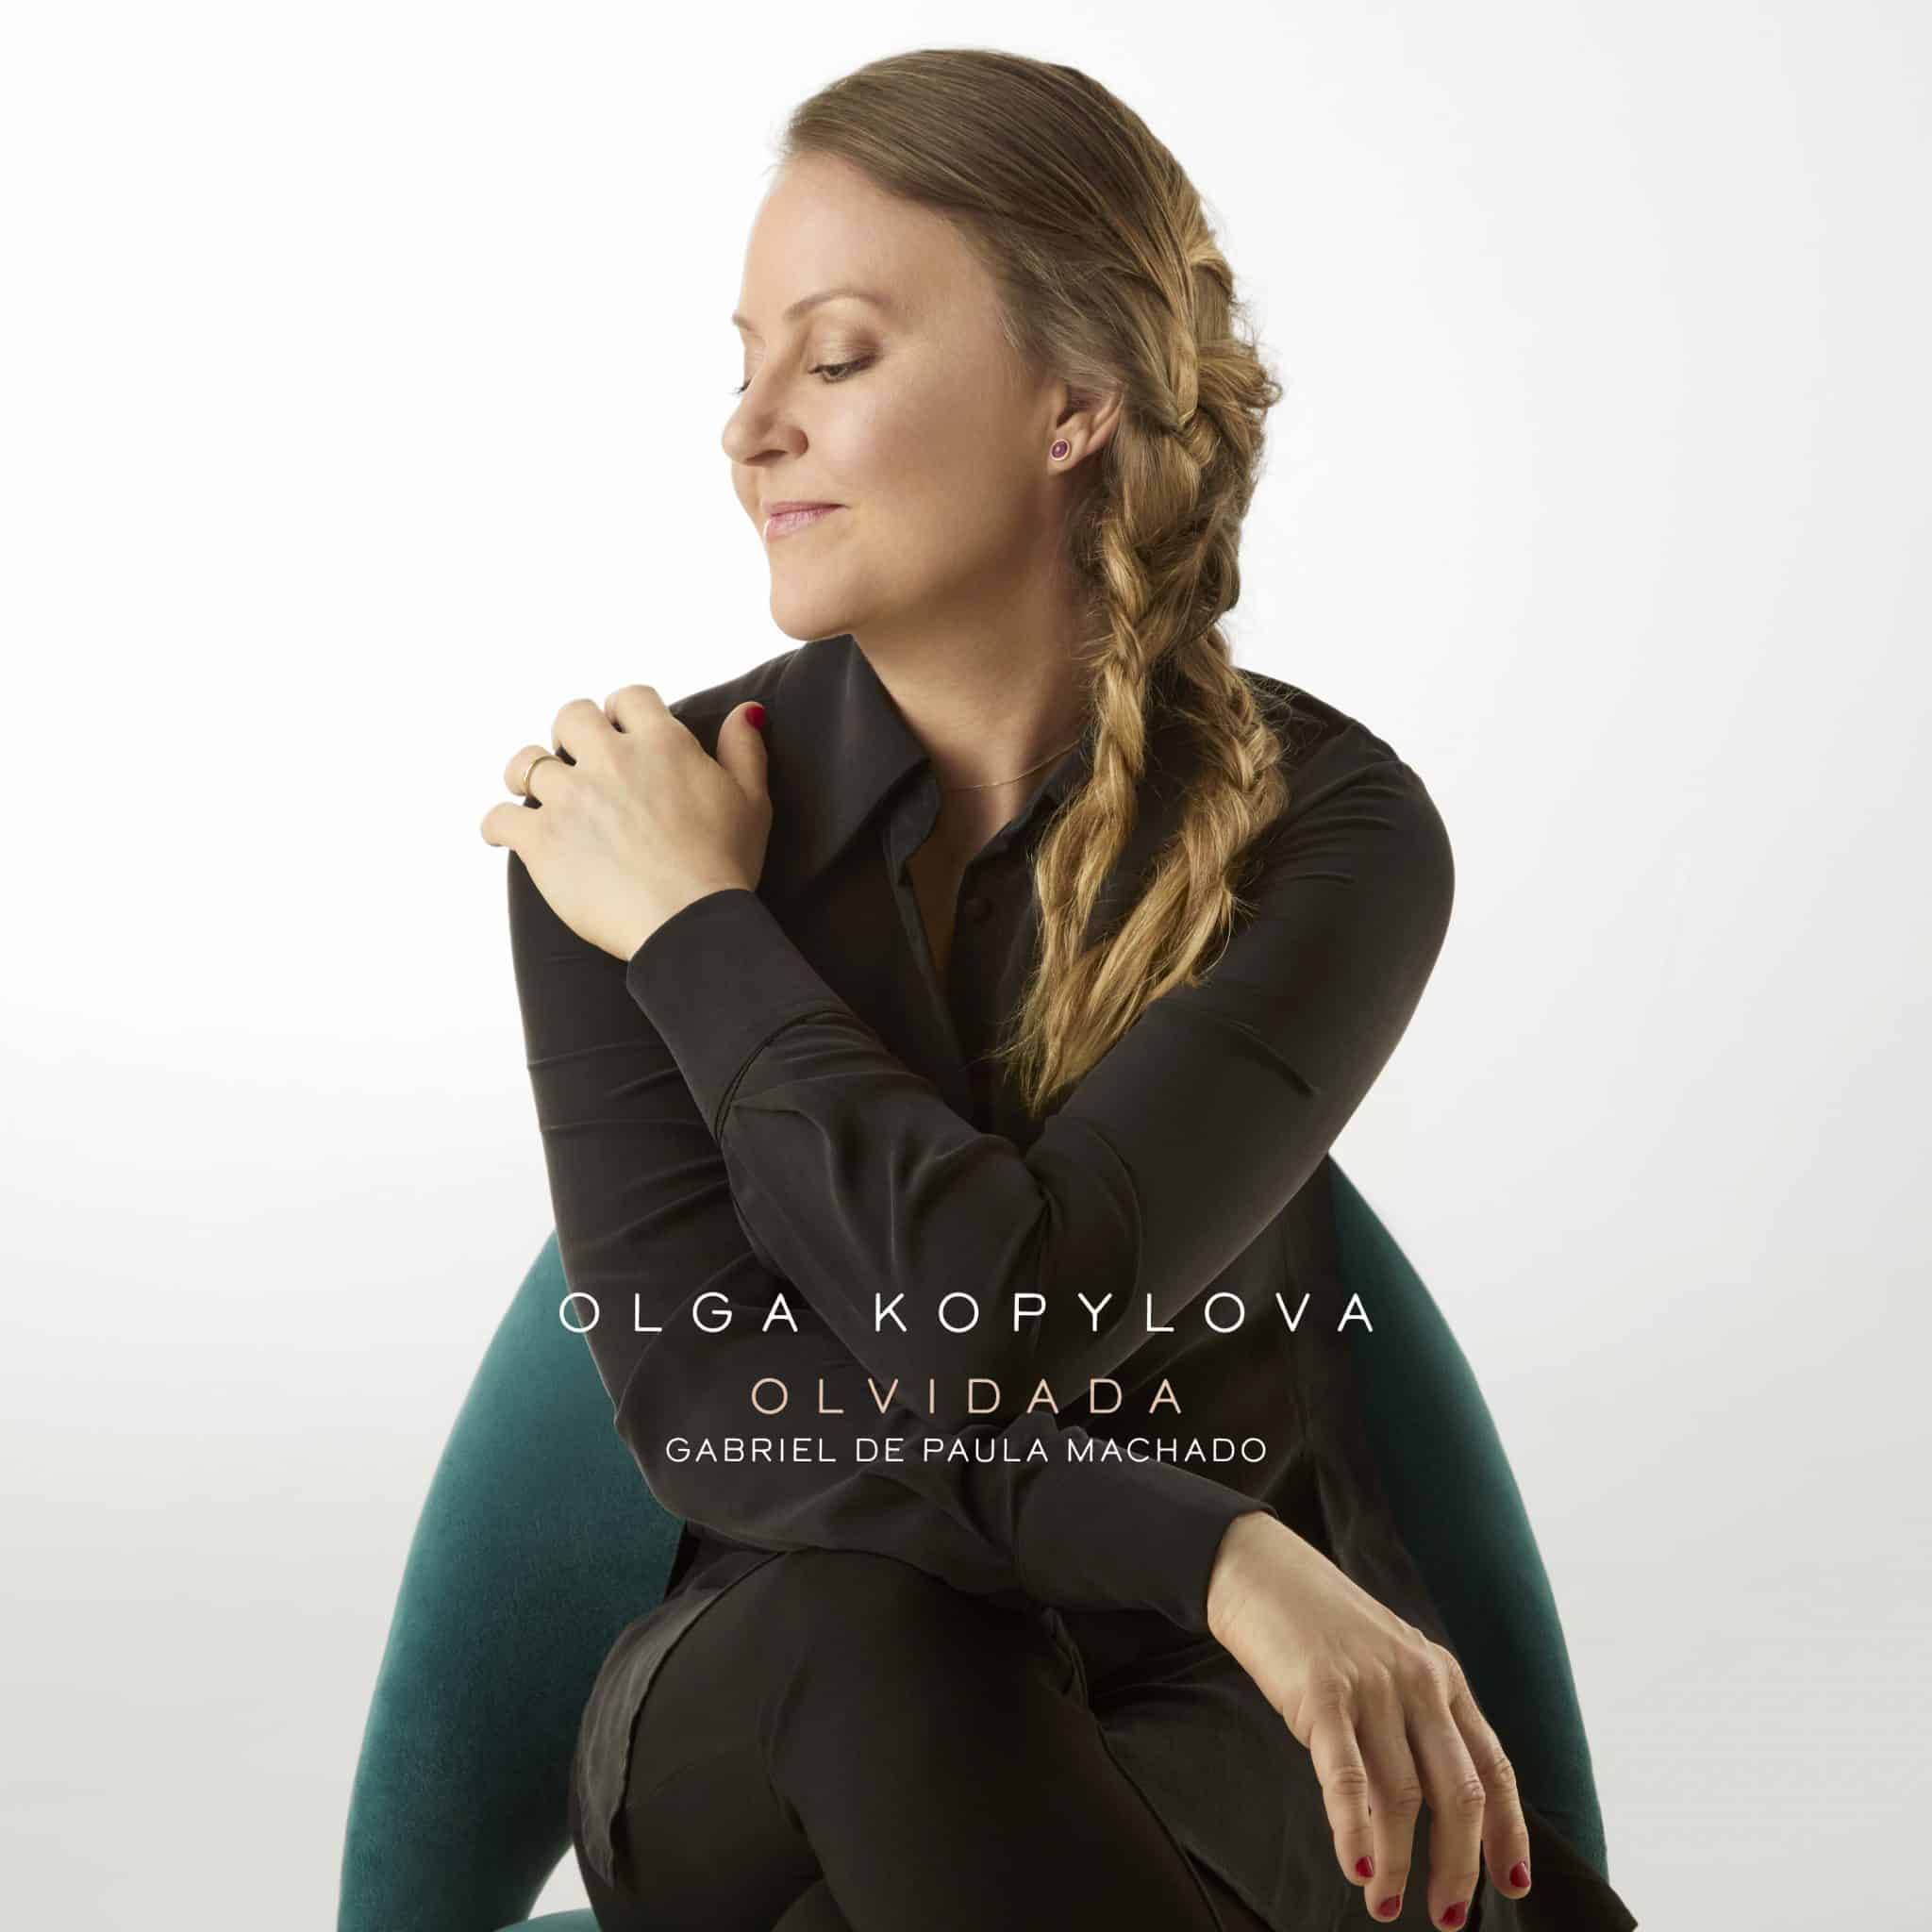 revistaprosaversoearte.com - Olga Kopylova lança single 'Olvidada', composição de Gabriel de Paula Machado